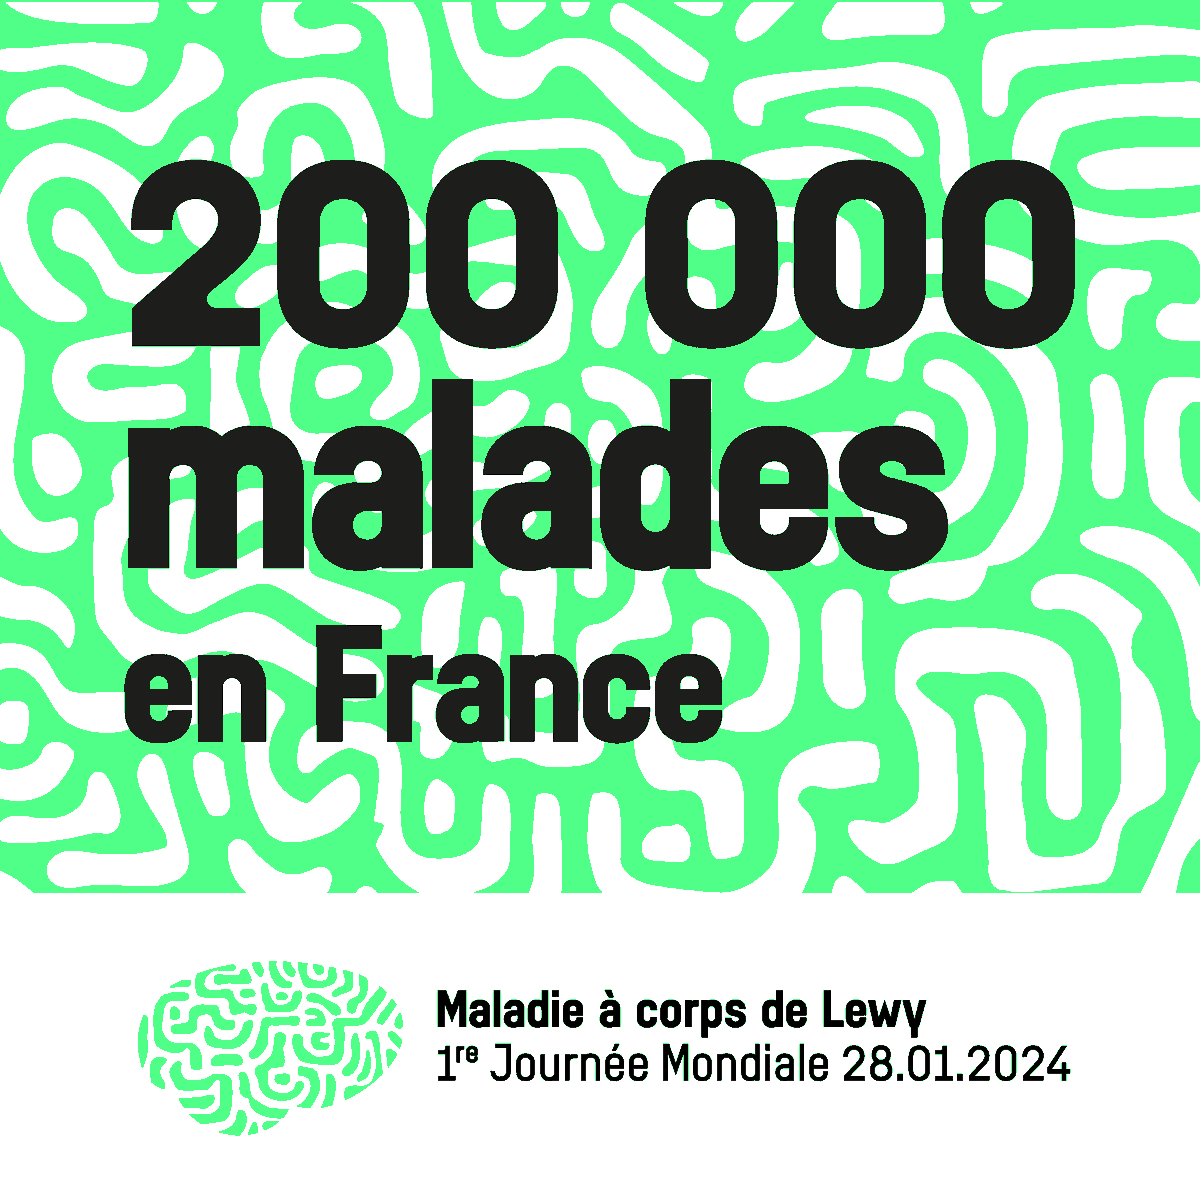 La maladie à corps de Lewy touche 200 000 patients en France mais reste largement méconnue. 

#corpsdelewy #lewybodydementia #maladieneurocognitive #santementale #cerveau